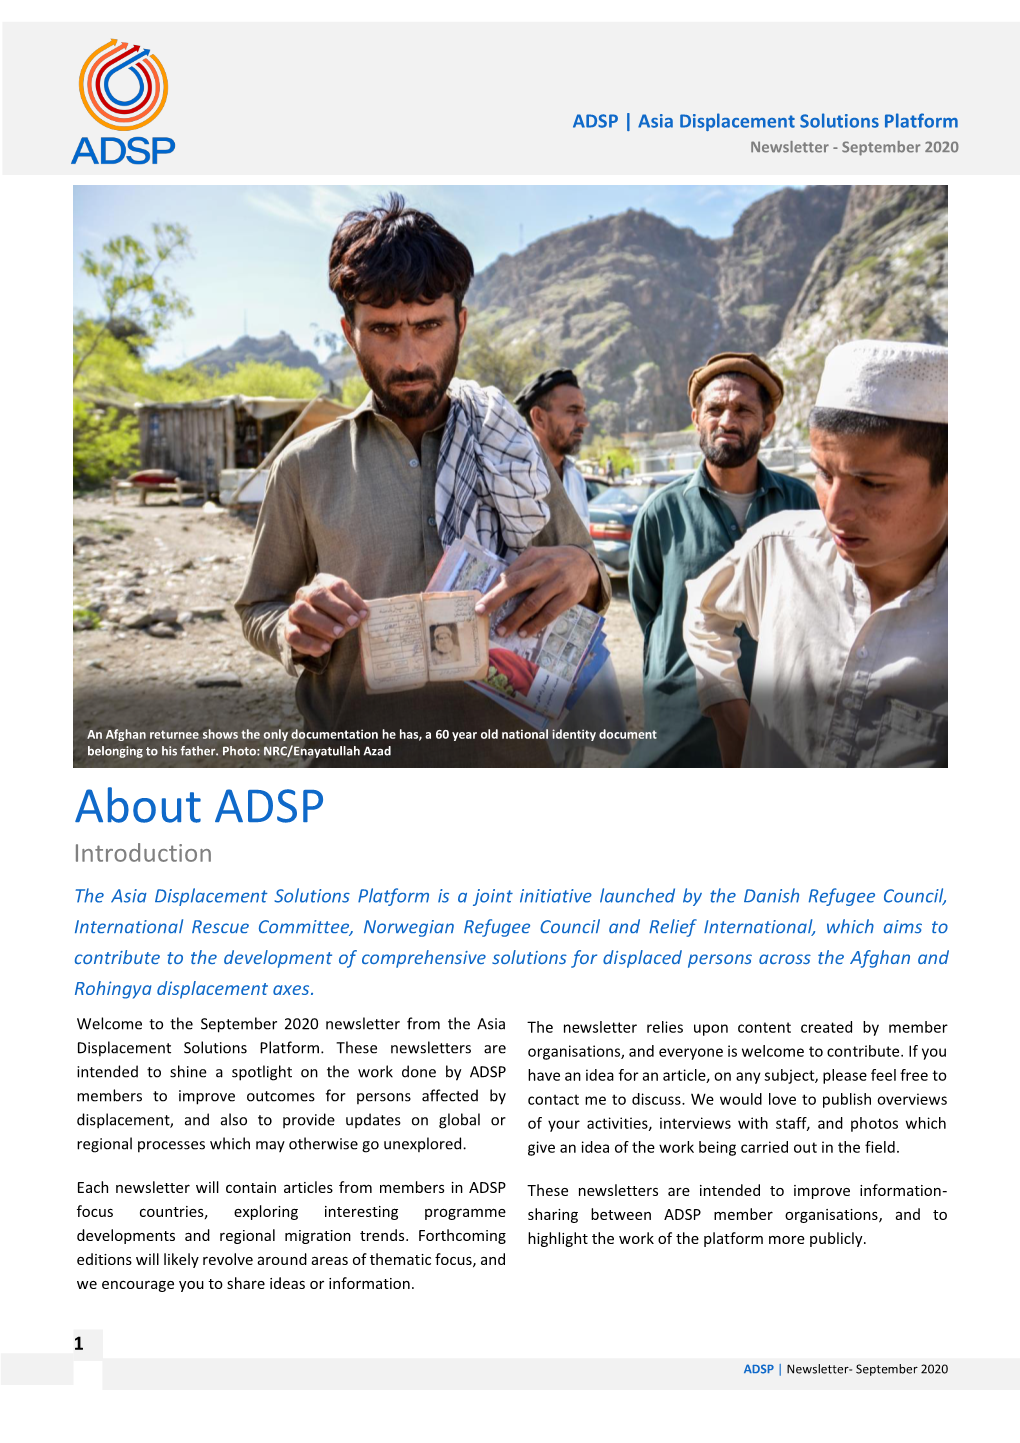 ADSP Newsletter September20